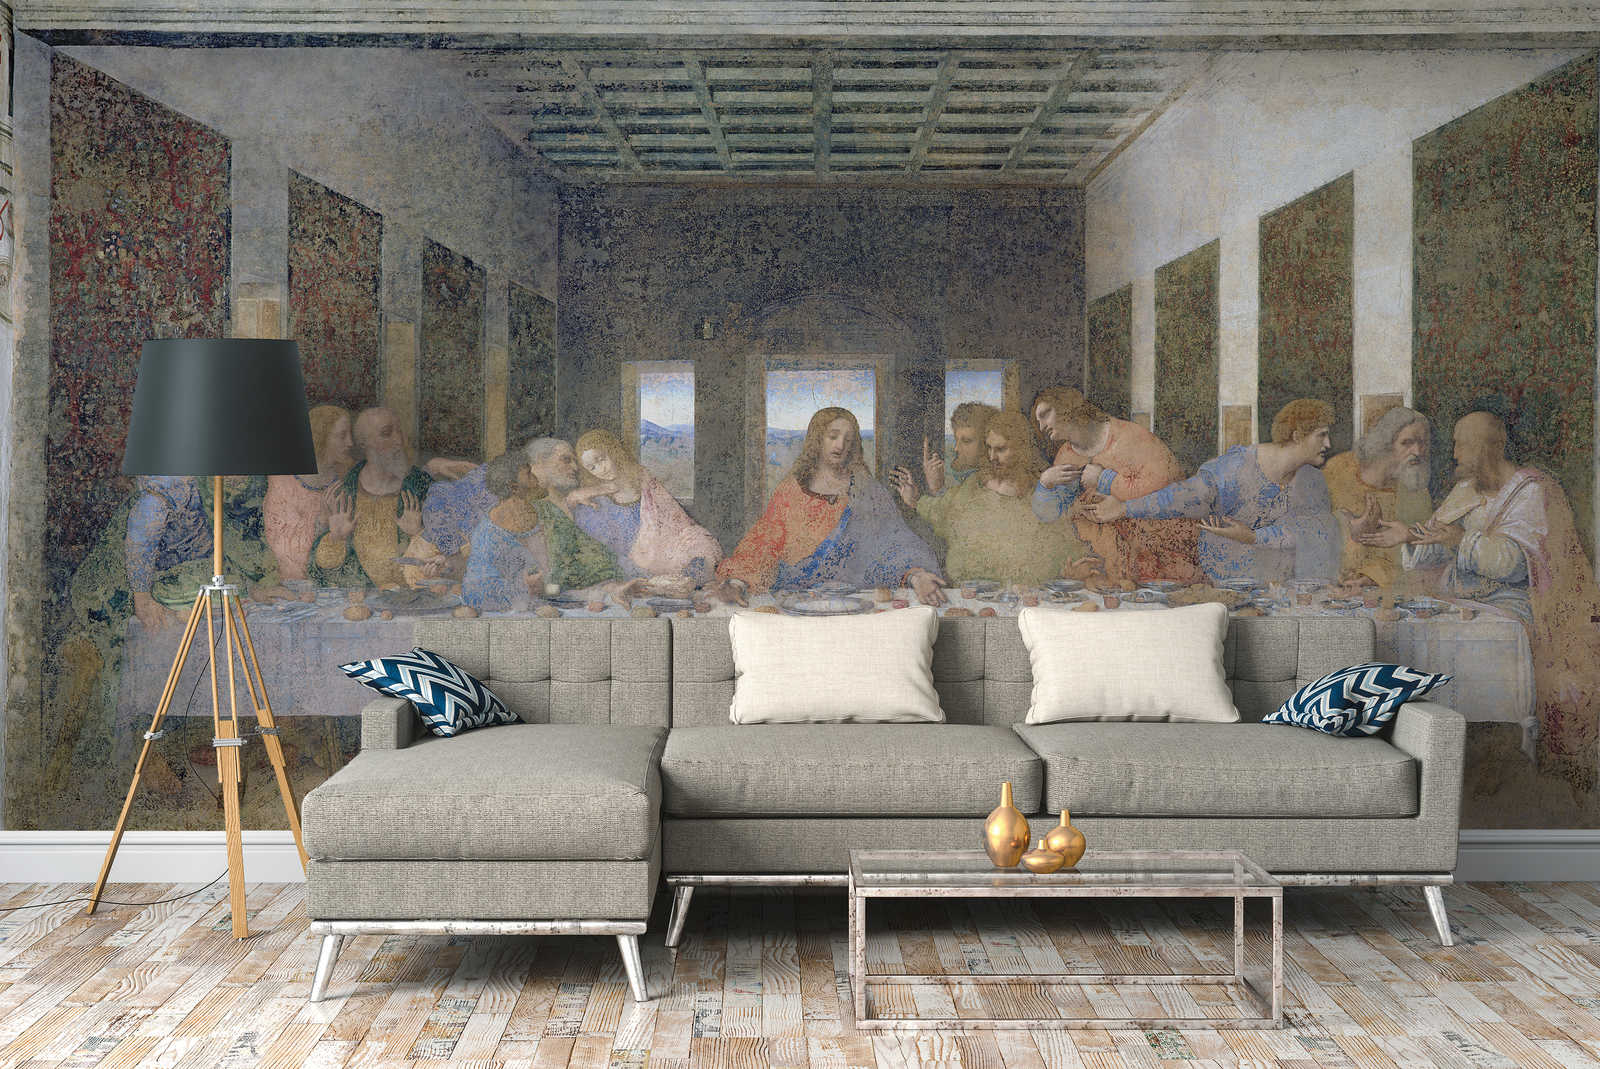             Il murale "L'Ultima Cena" di Leonardo da Vinci
        